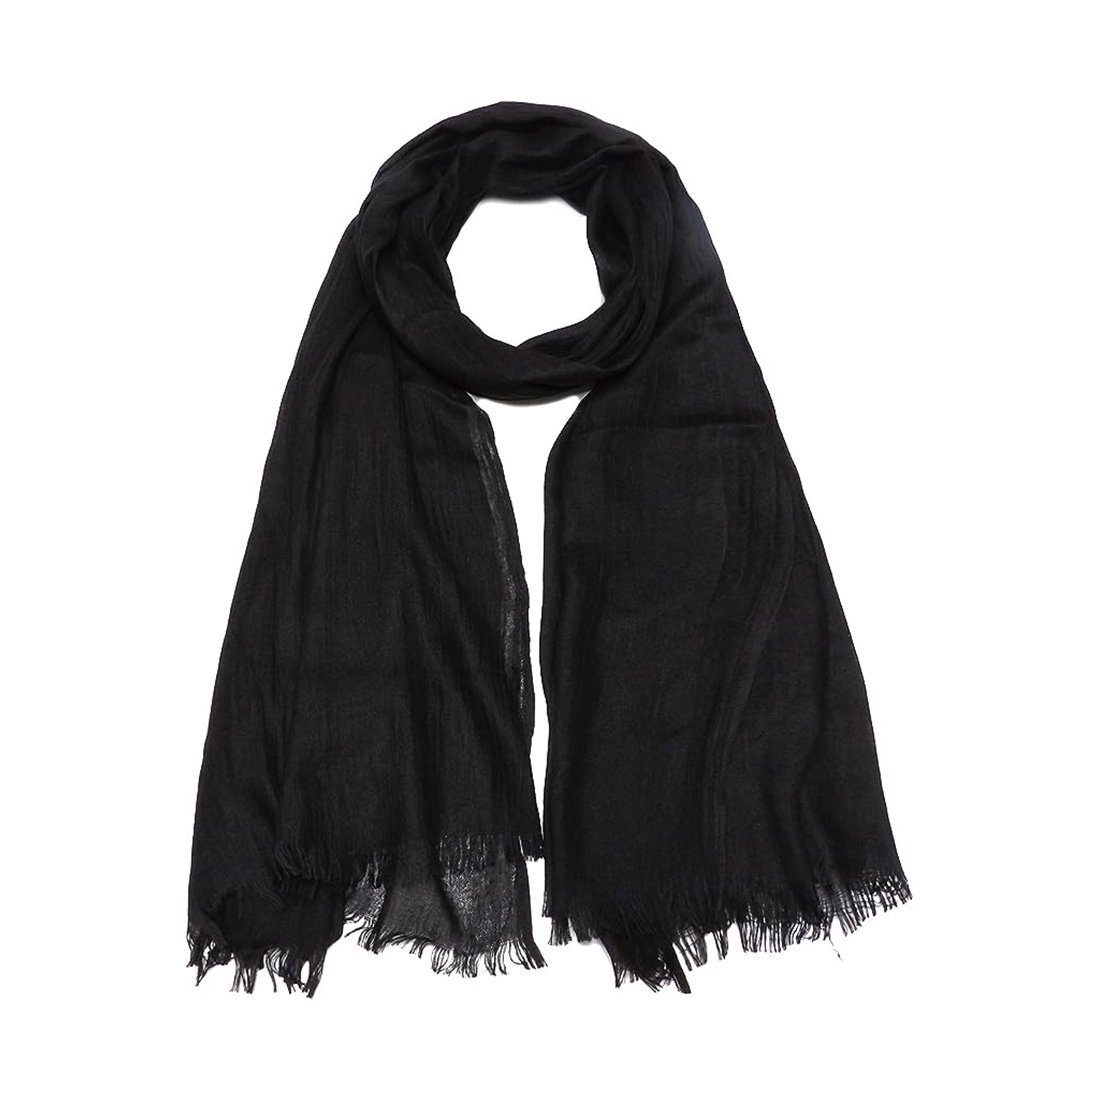 Juoungle Schal Damen Schals Leichte Elegantes Lange Gaze Plain Tücher schwarz | Modeschals